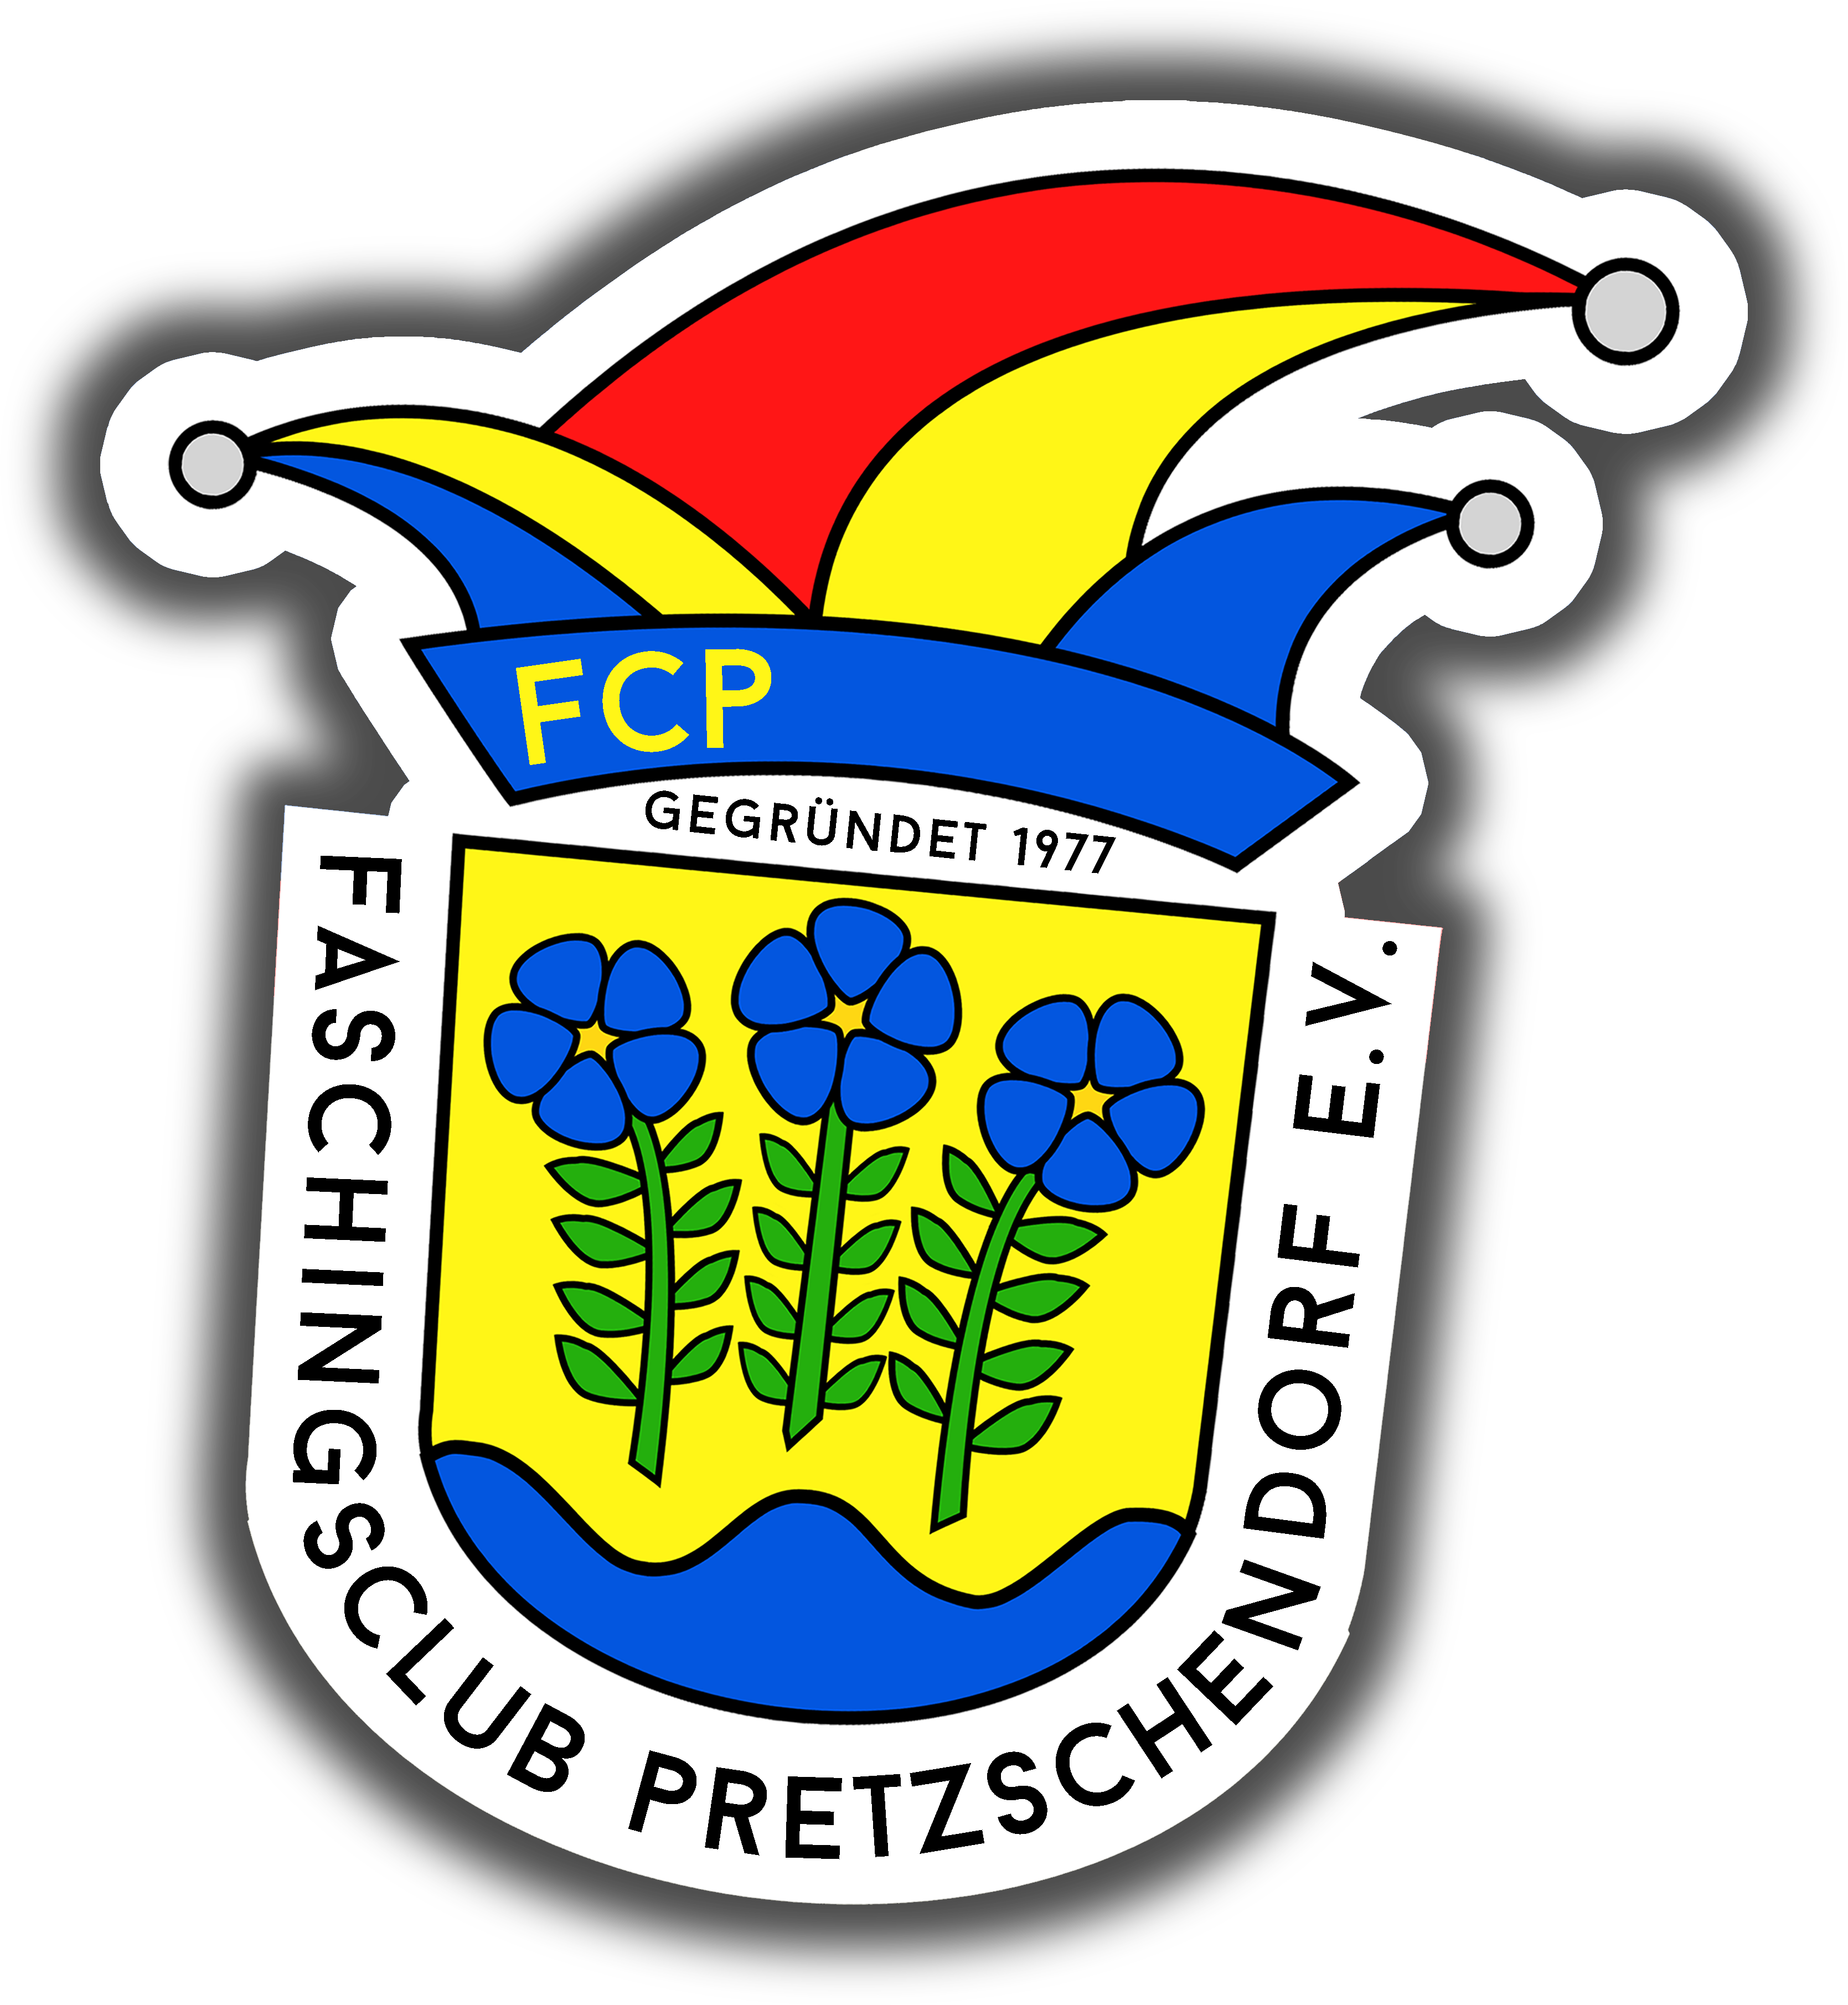 Faschingsclub Pretzschendorf e.V. - FCP He, He, He !!!